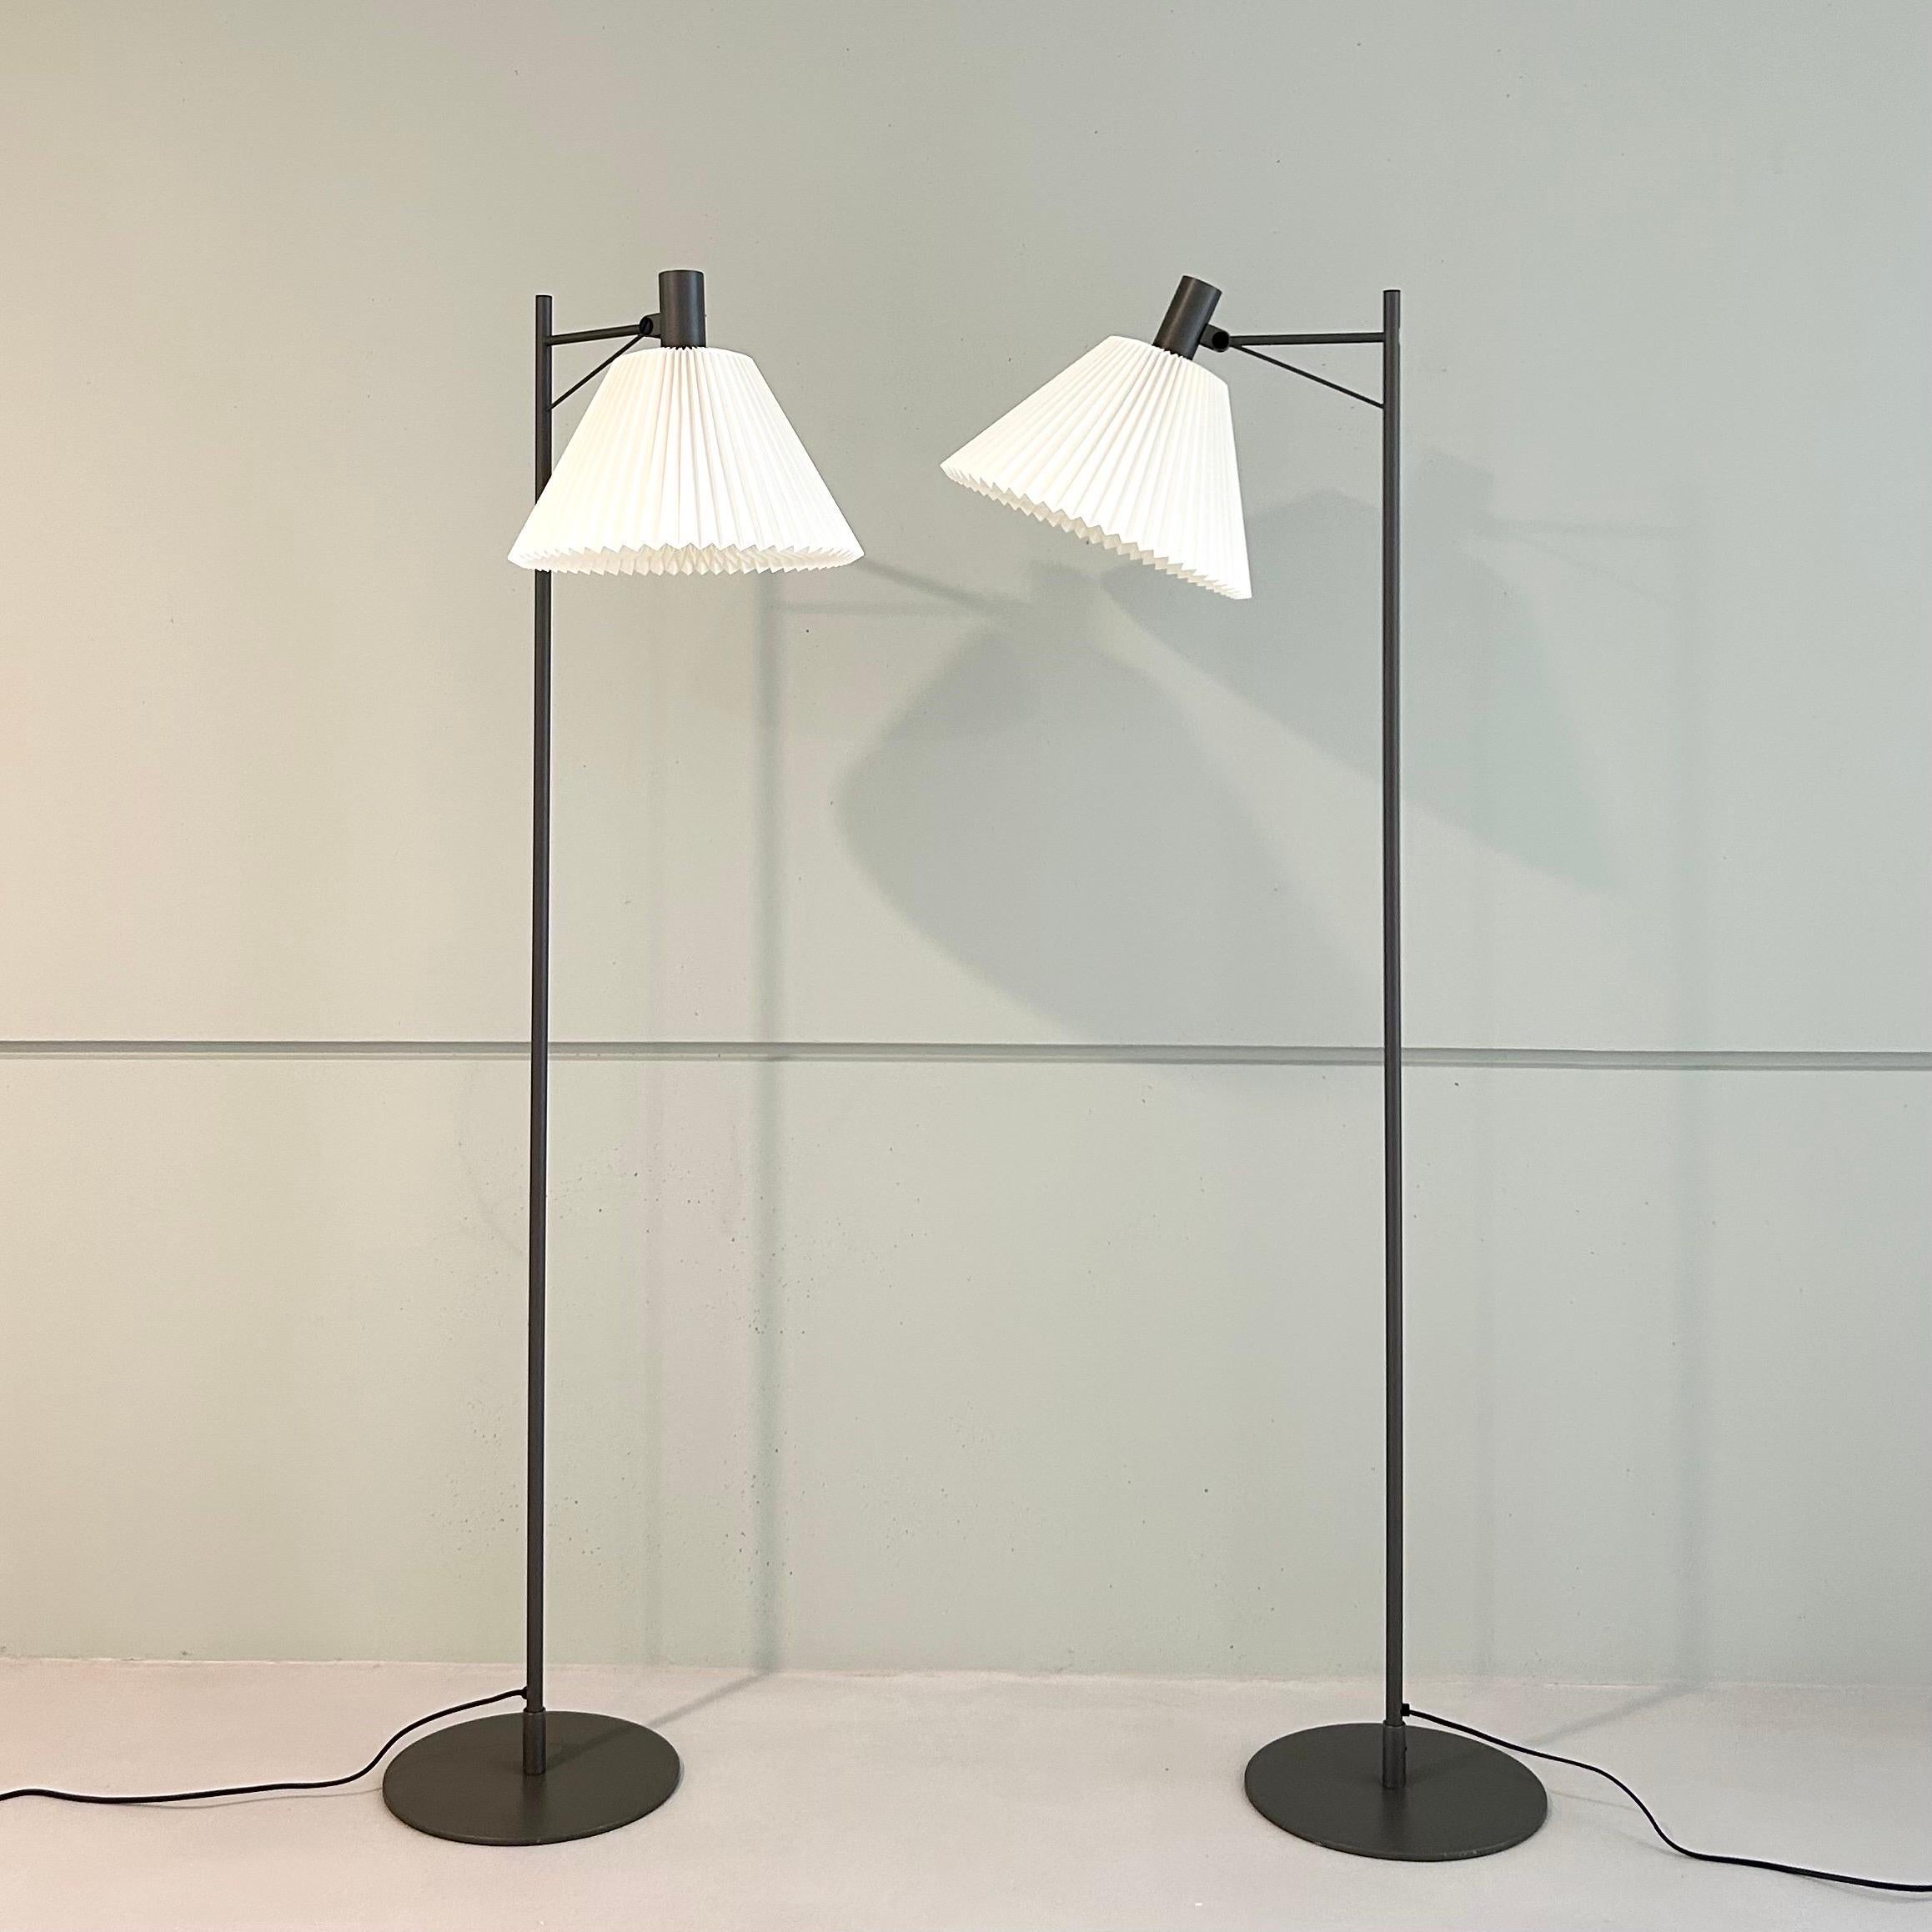 Set of Danish Modern Le Klint Floor Lamps, 1970s, Denmark For Sale 5